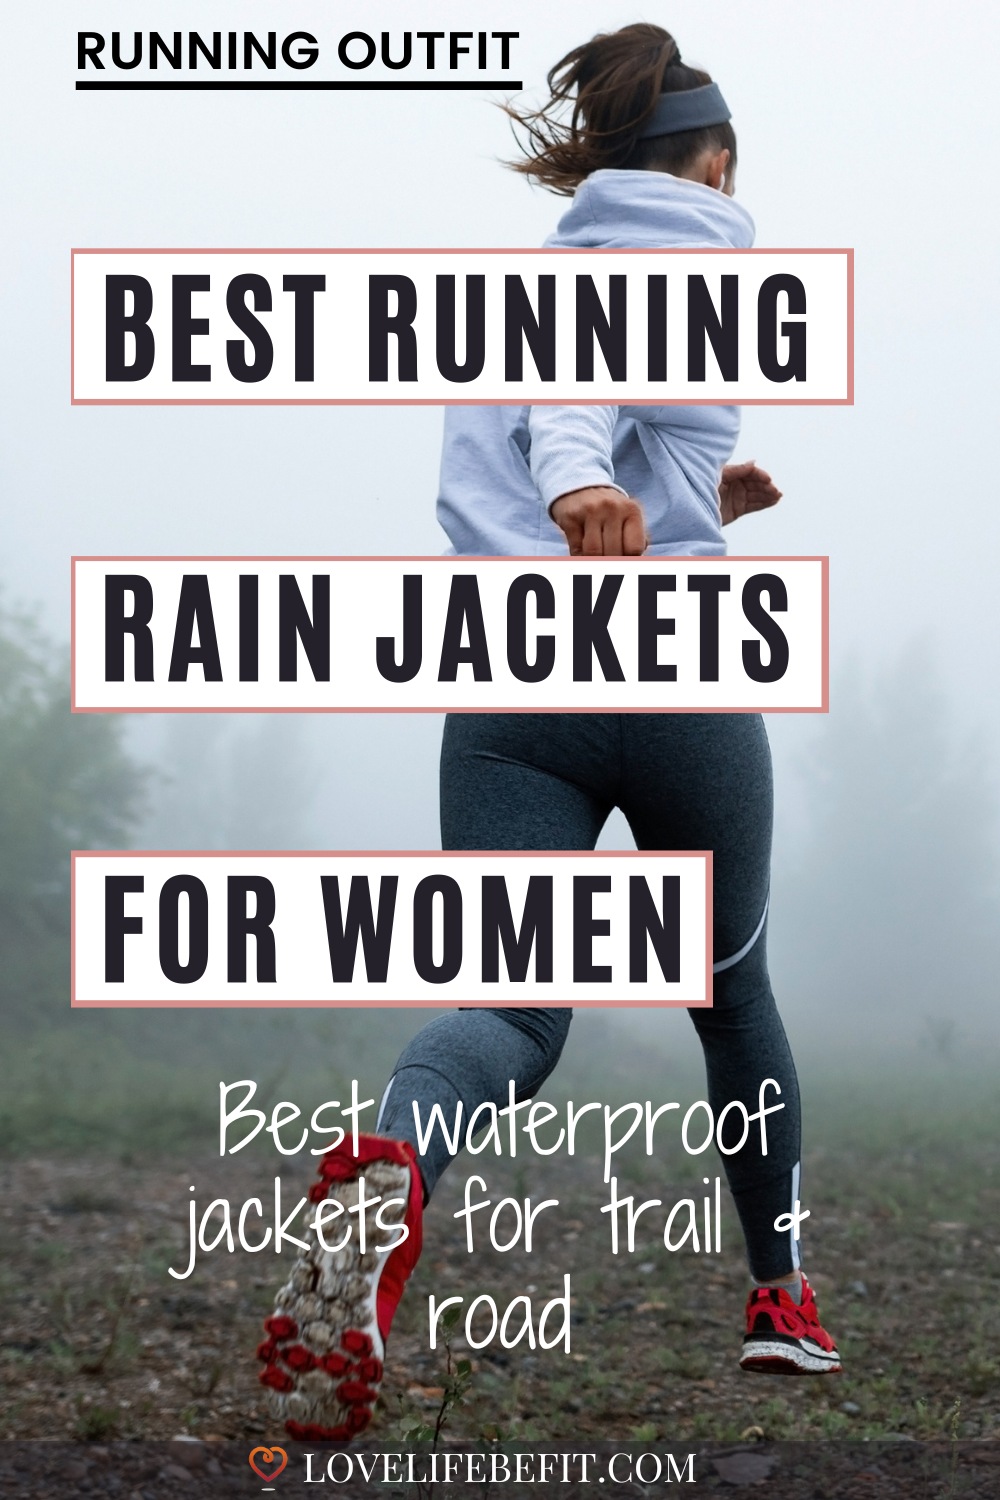 Best running rain jackets for women